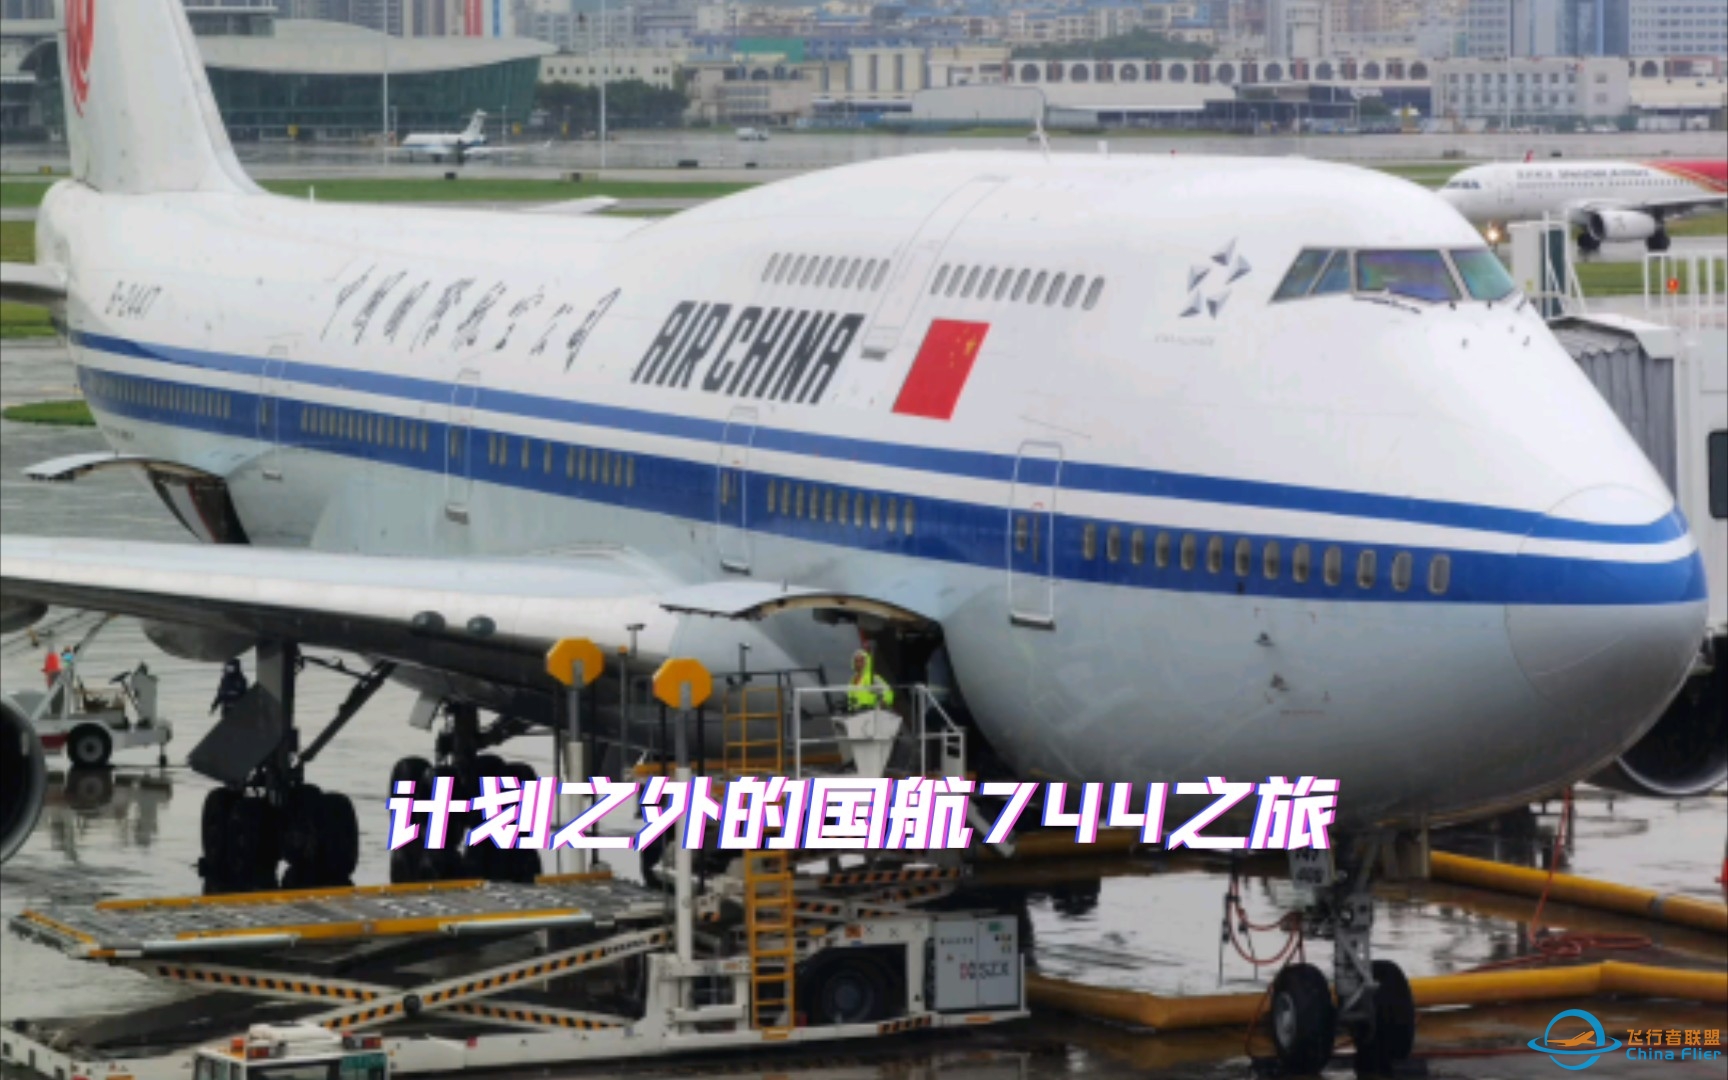 从机龄0.6年到28.6年，原本想体验深航最新空客A321NX，却意外坐上国航第二老的波音747-400（B-2447）-8119 